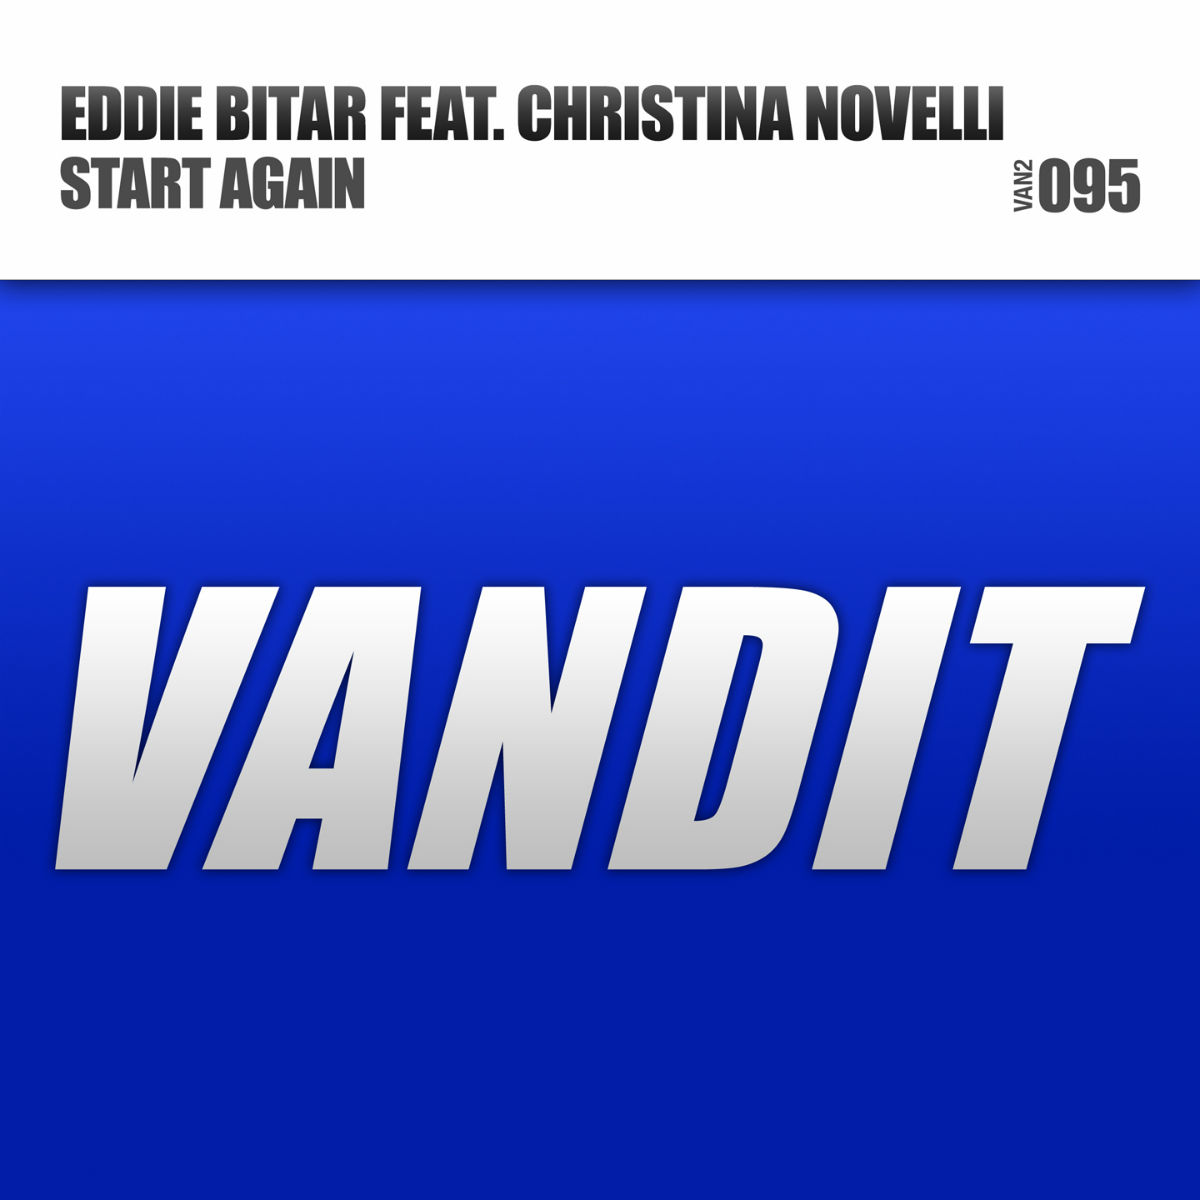 Eddie Bitar Featuring Christina Novelli Cover Art